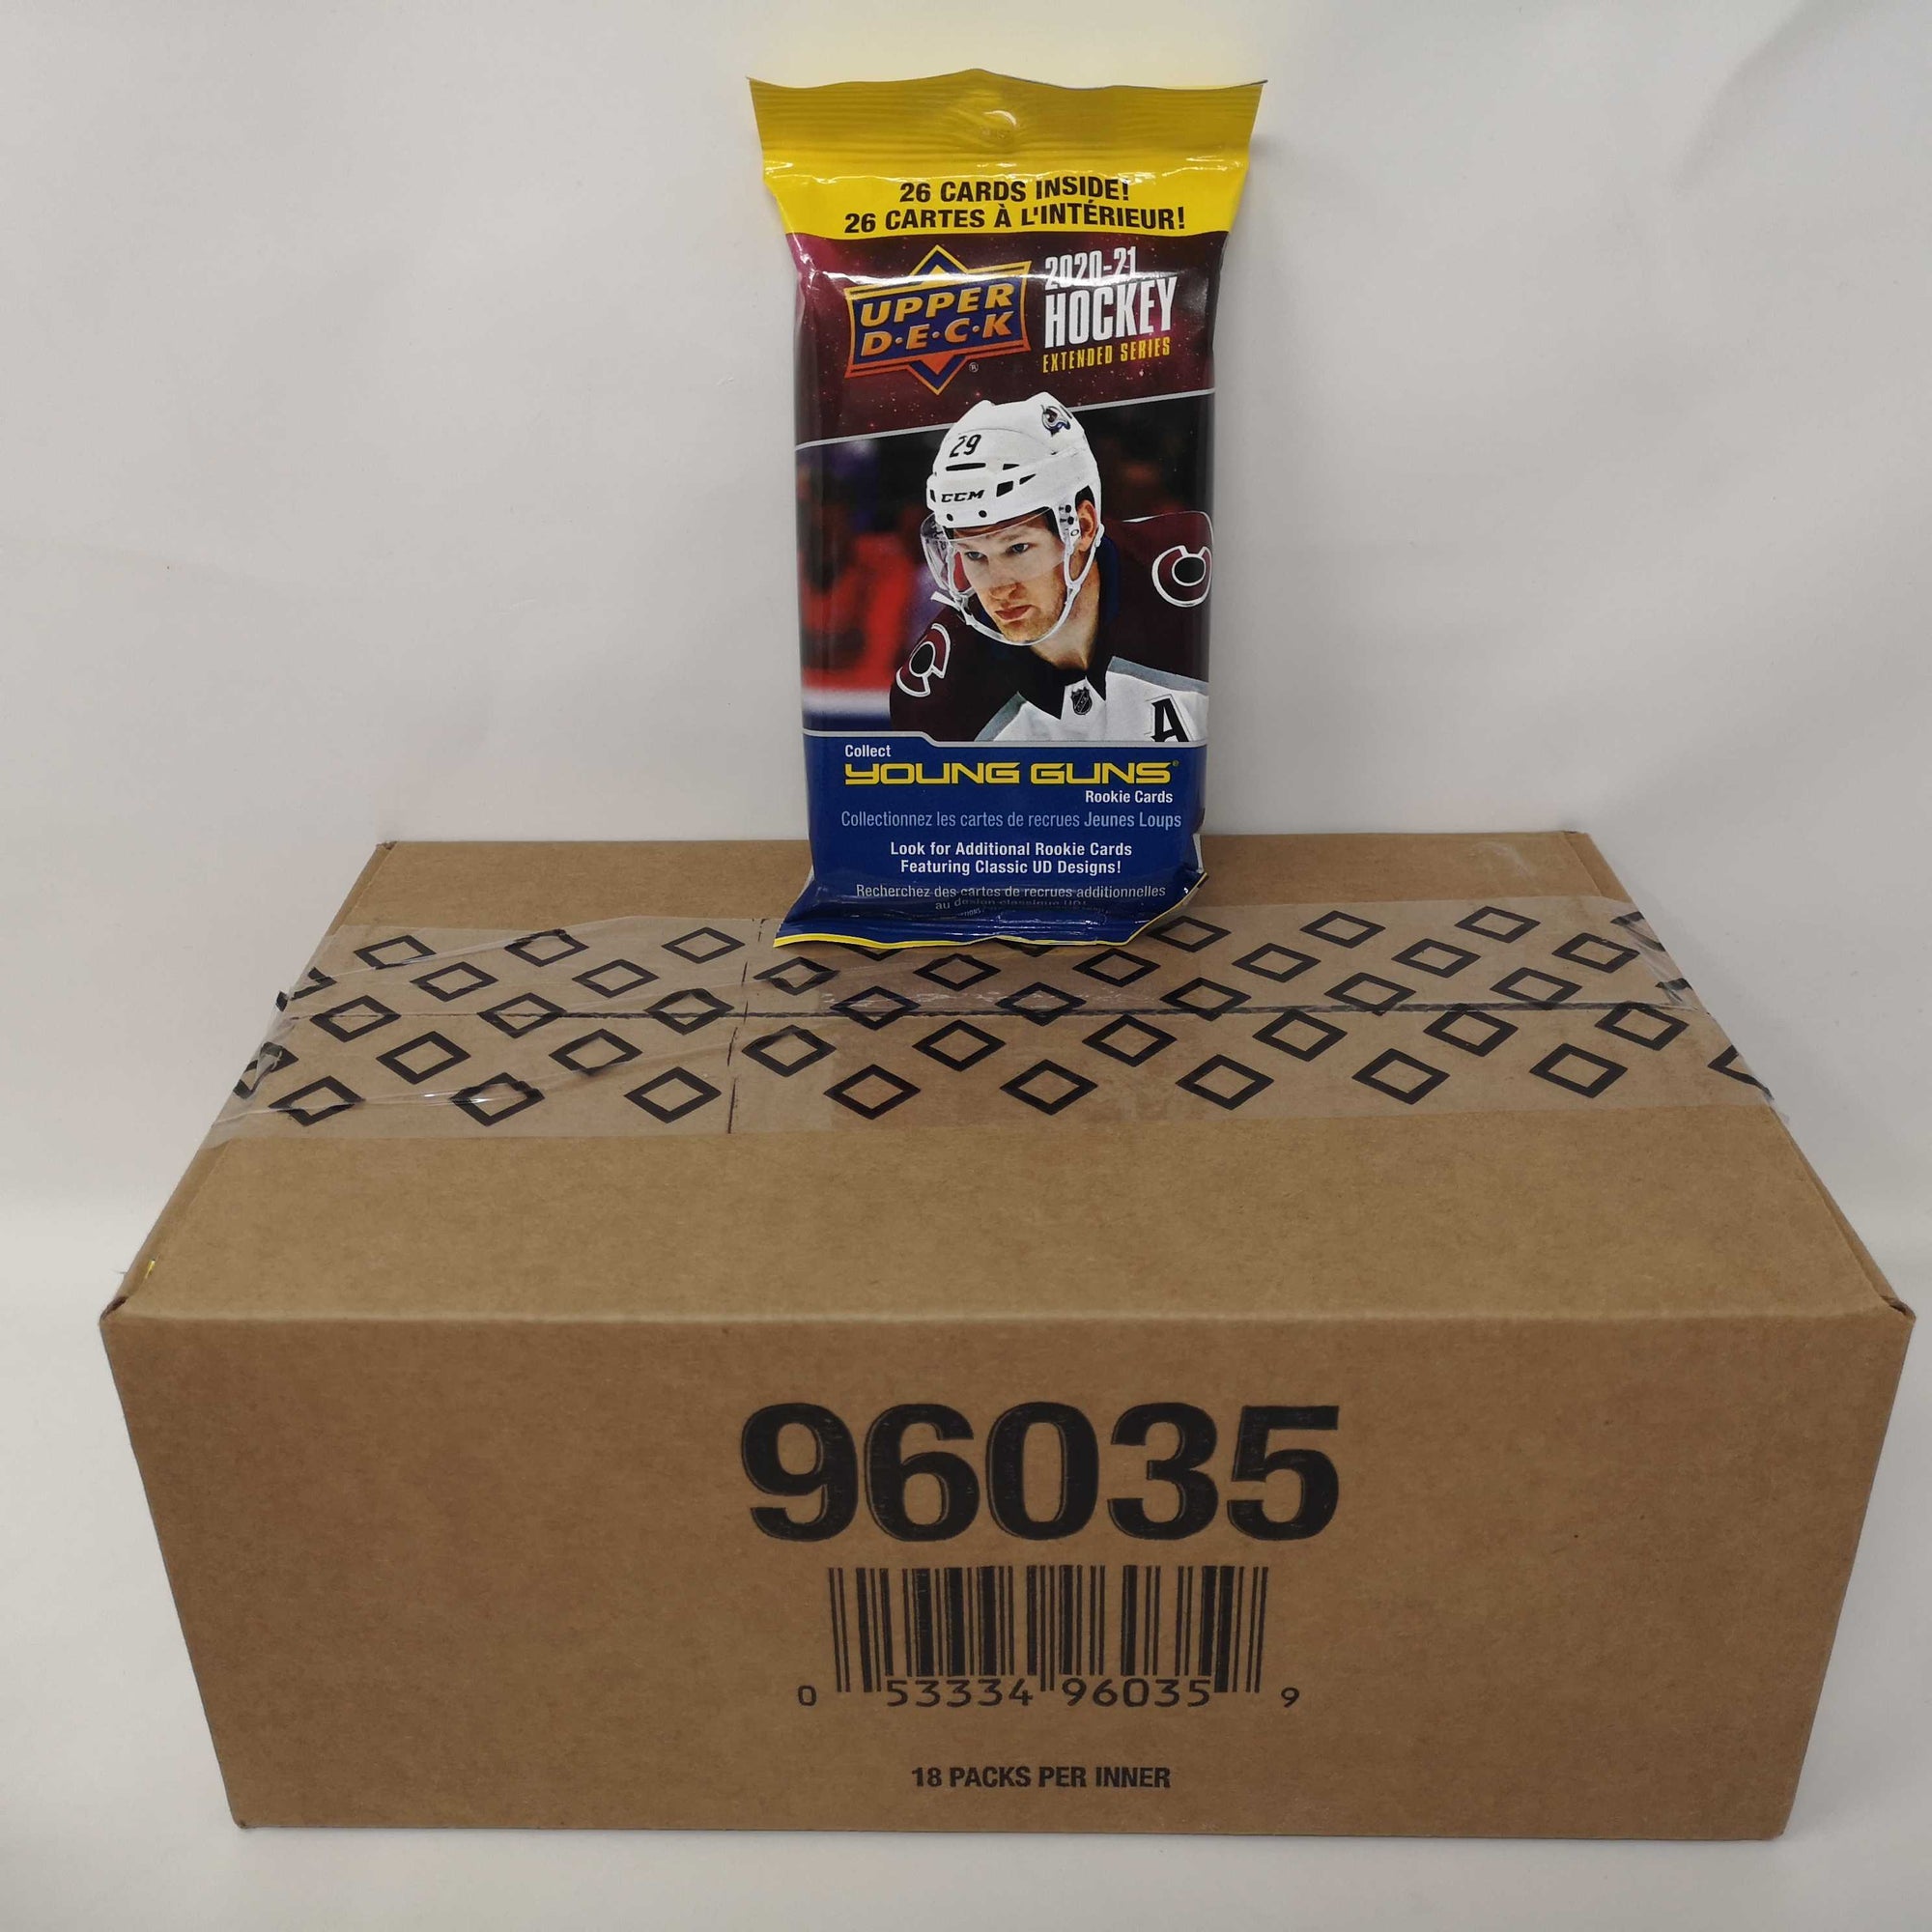 20/21 Upper Deck Hockey Extended Fat Pack - Inner Box